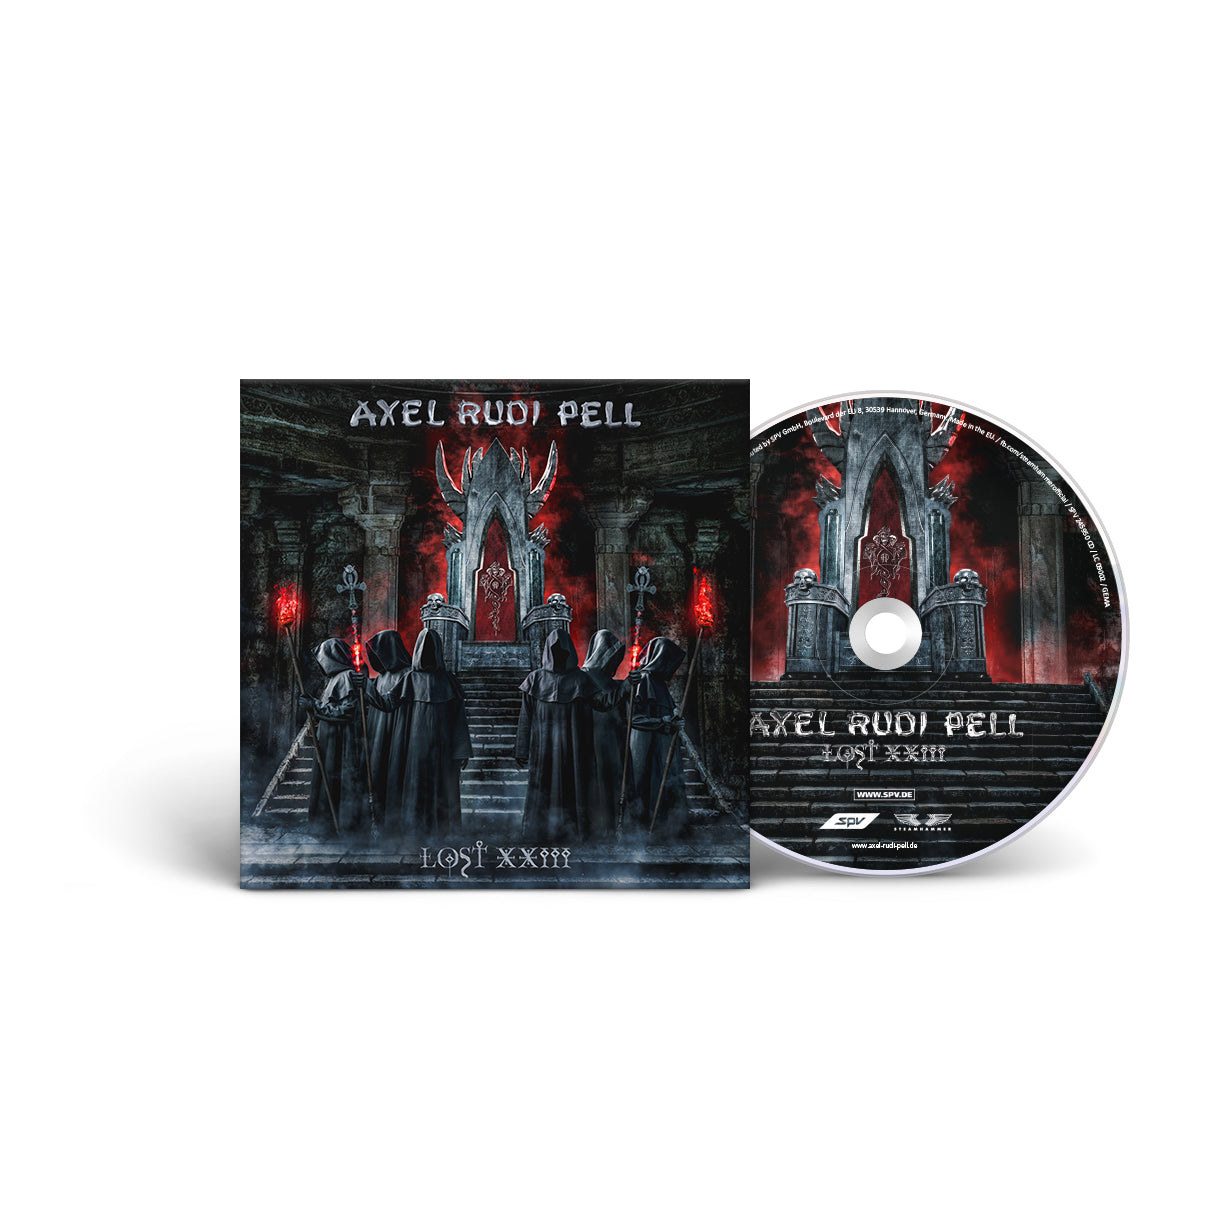 Axel Rudi Pell "Lost XXIII" CD (limited)